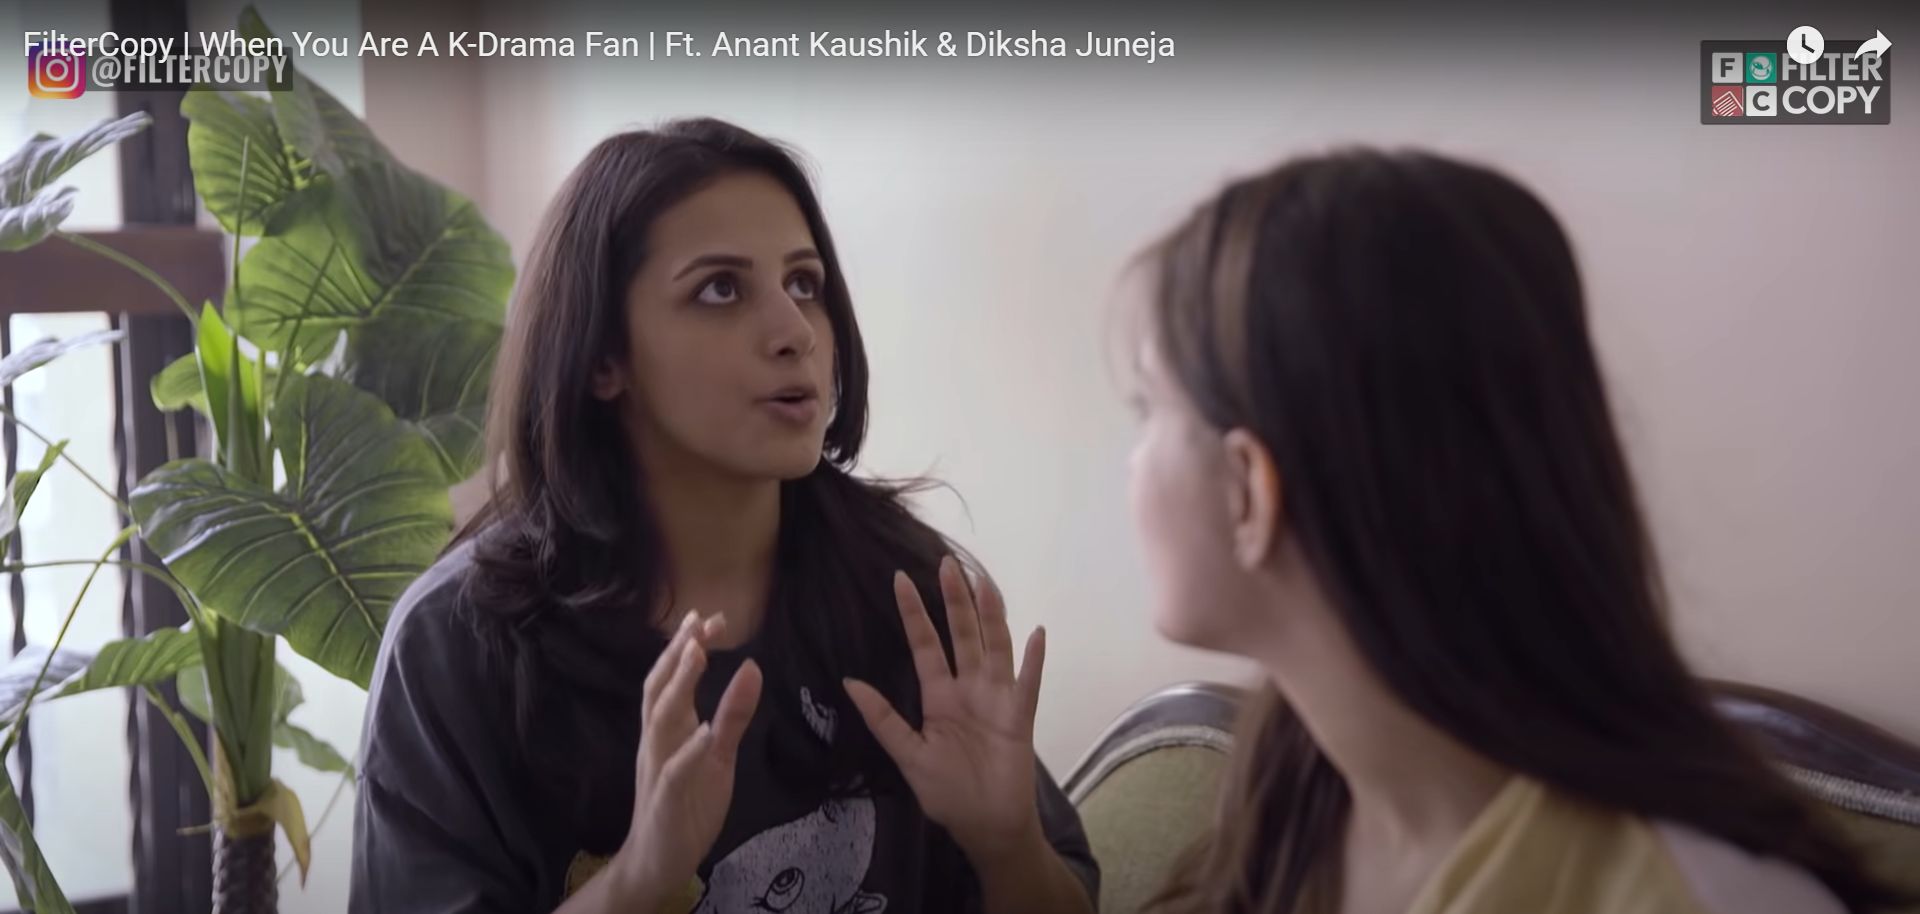 A shot of Diksha Juneja in a Filter Copy video